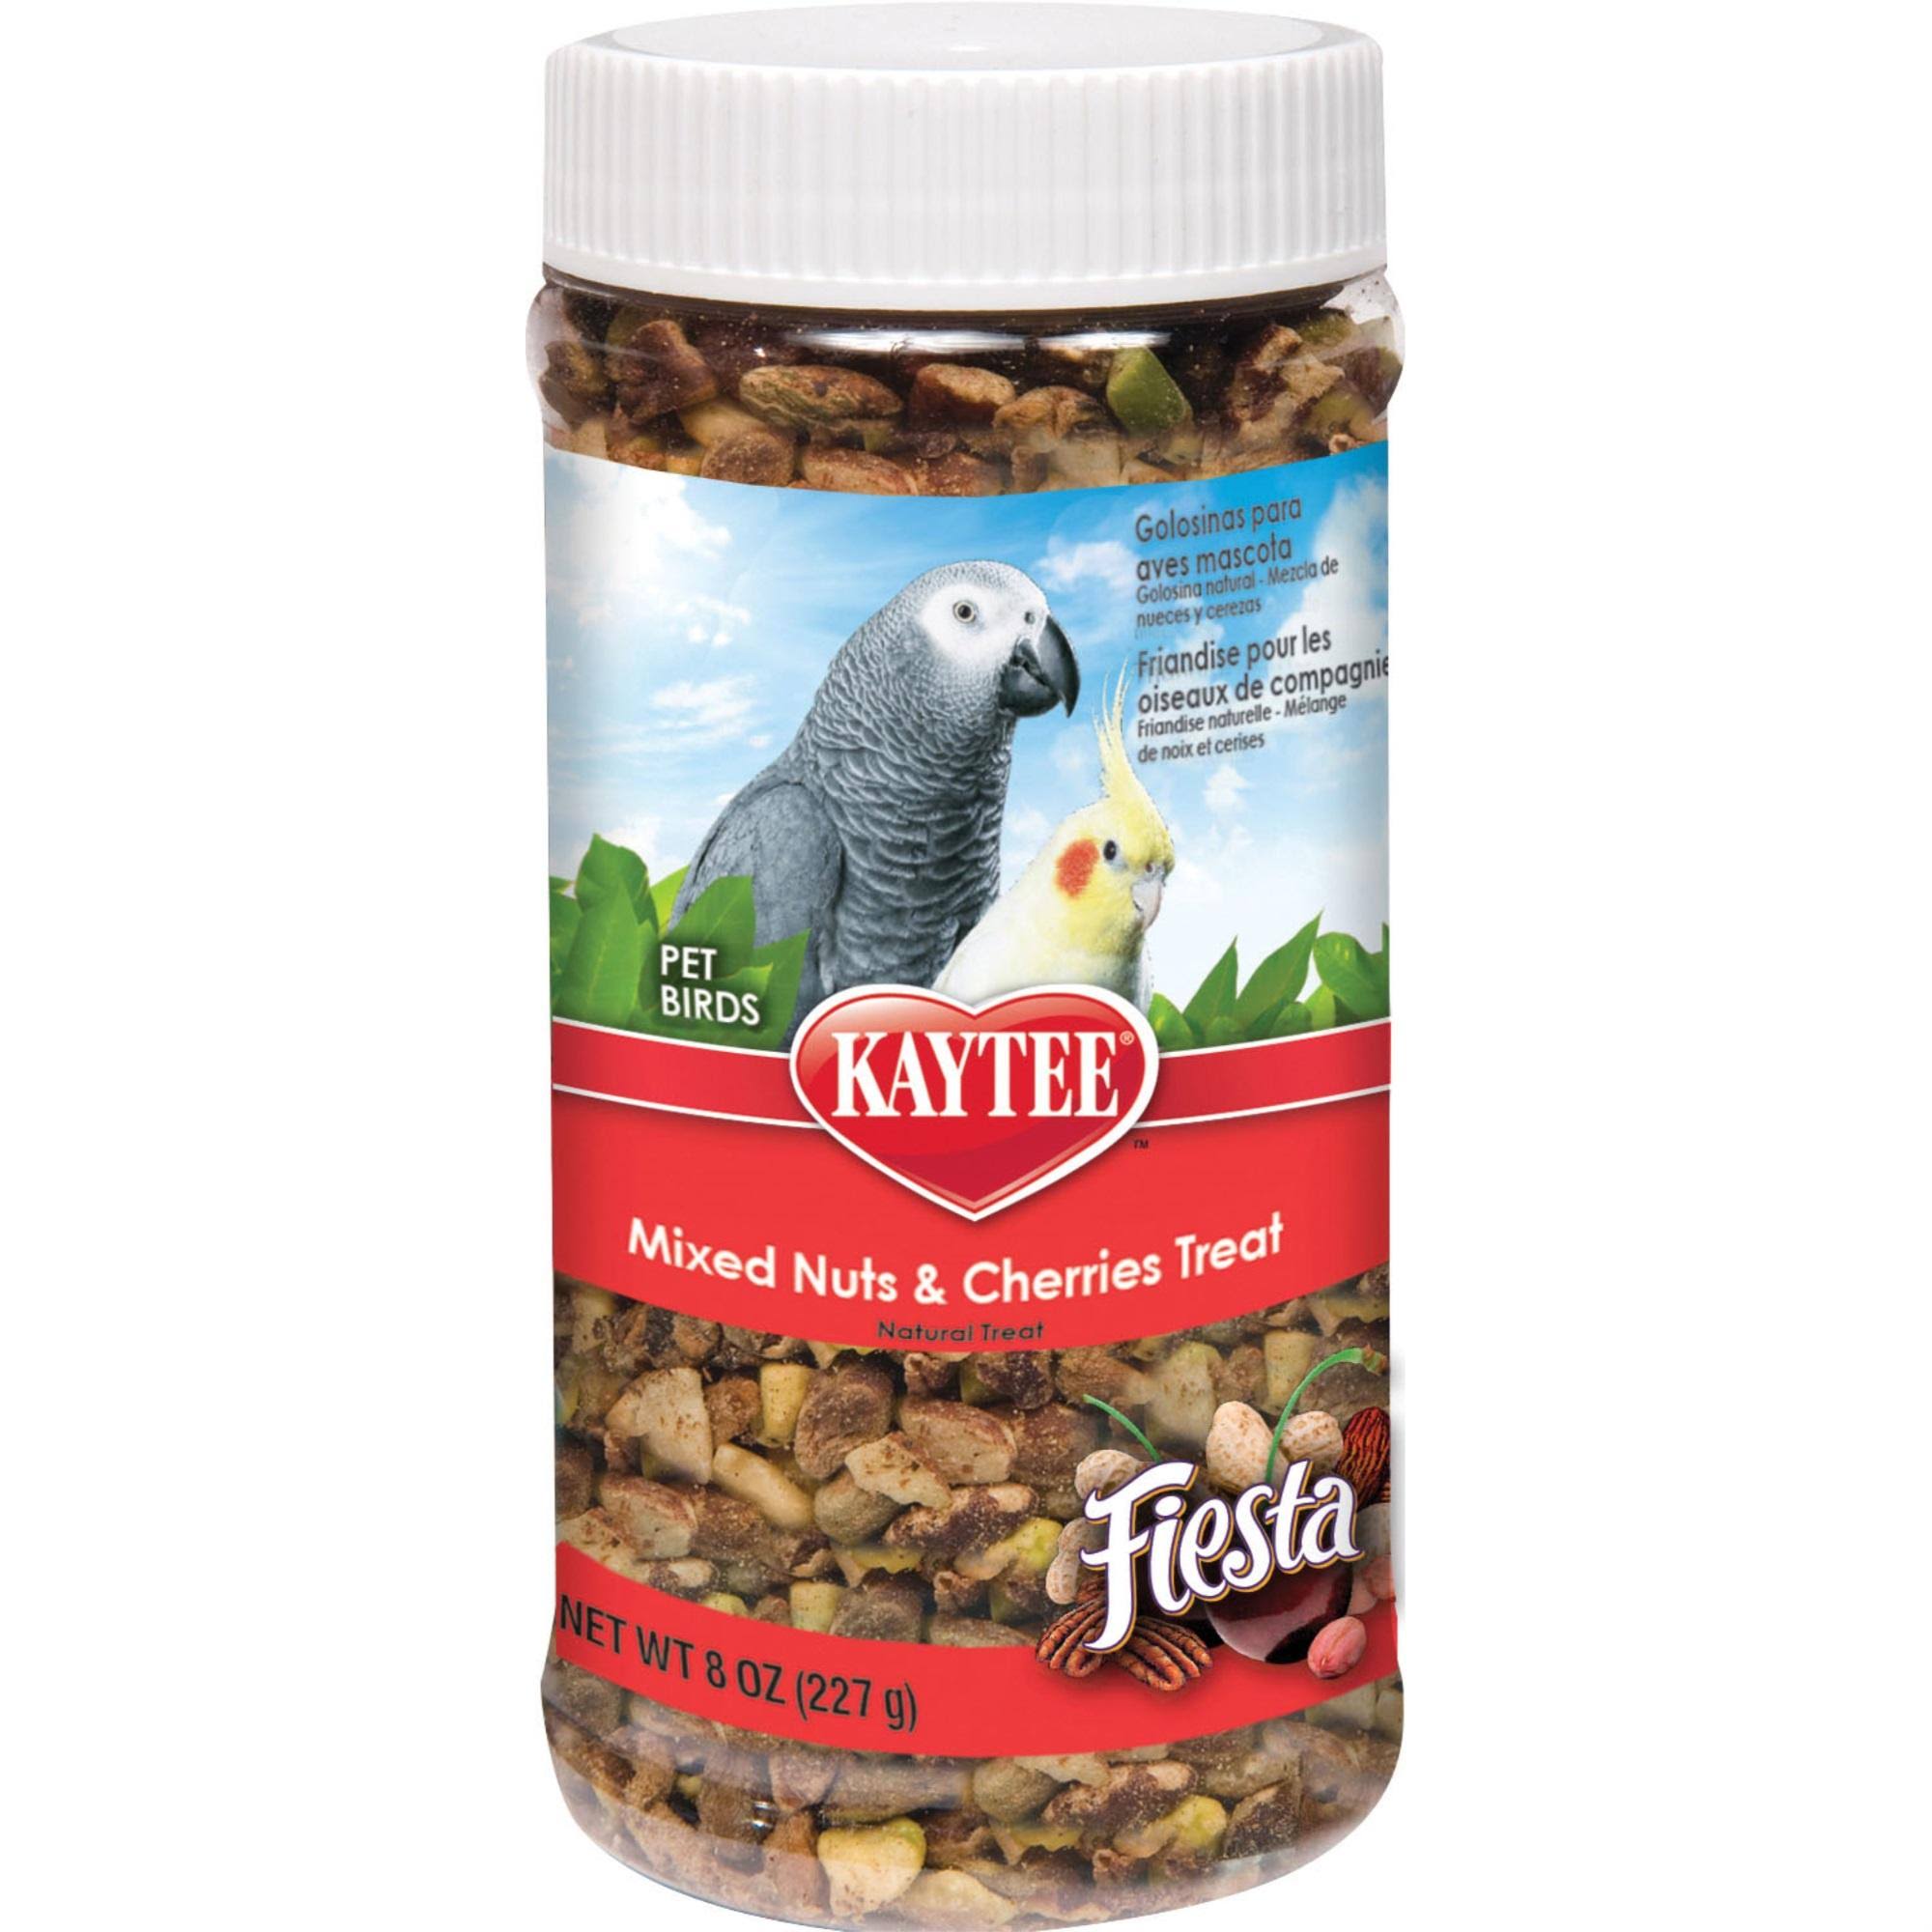 Kaytee Fiesta Jar For Pets - Mixed Nuts $ Cherries, 8oz